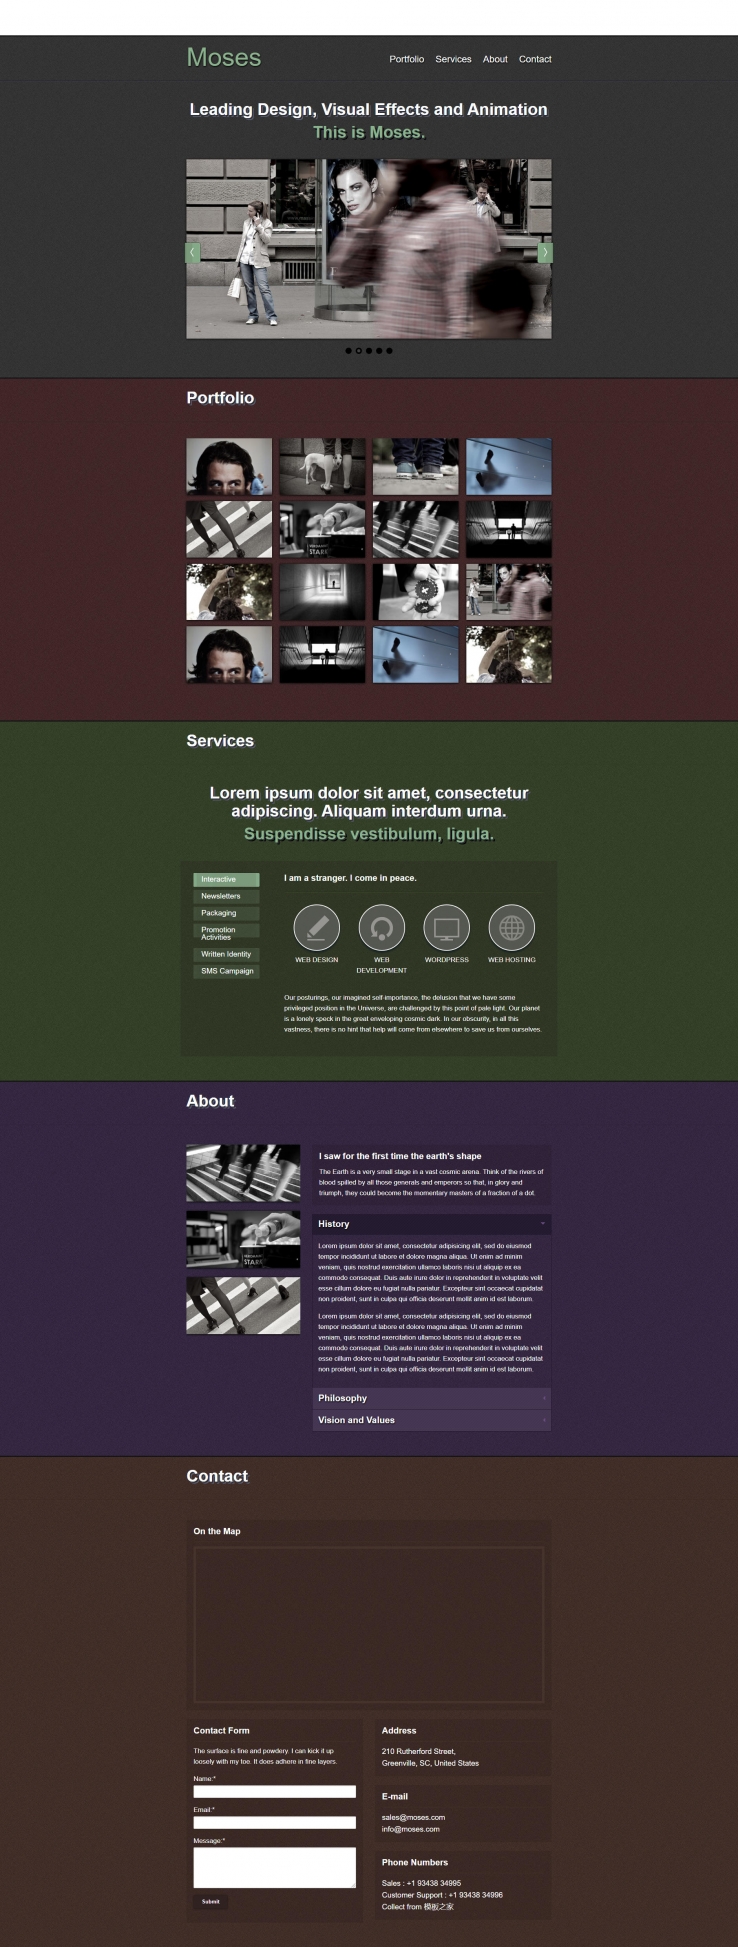 黑色响应式大图幻灯的视觉设计网站模板下载